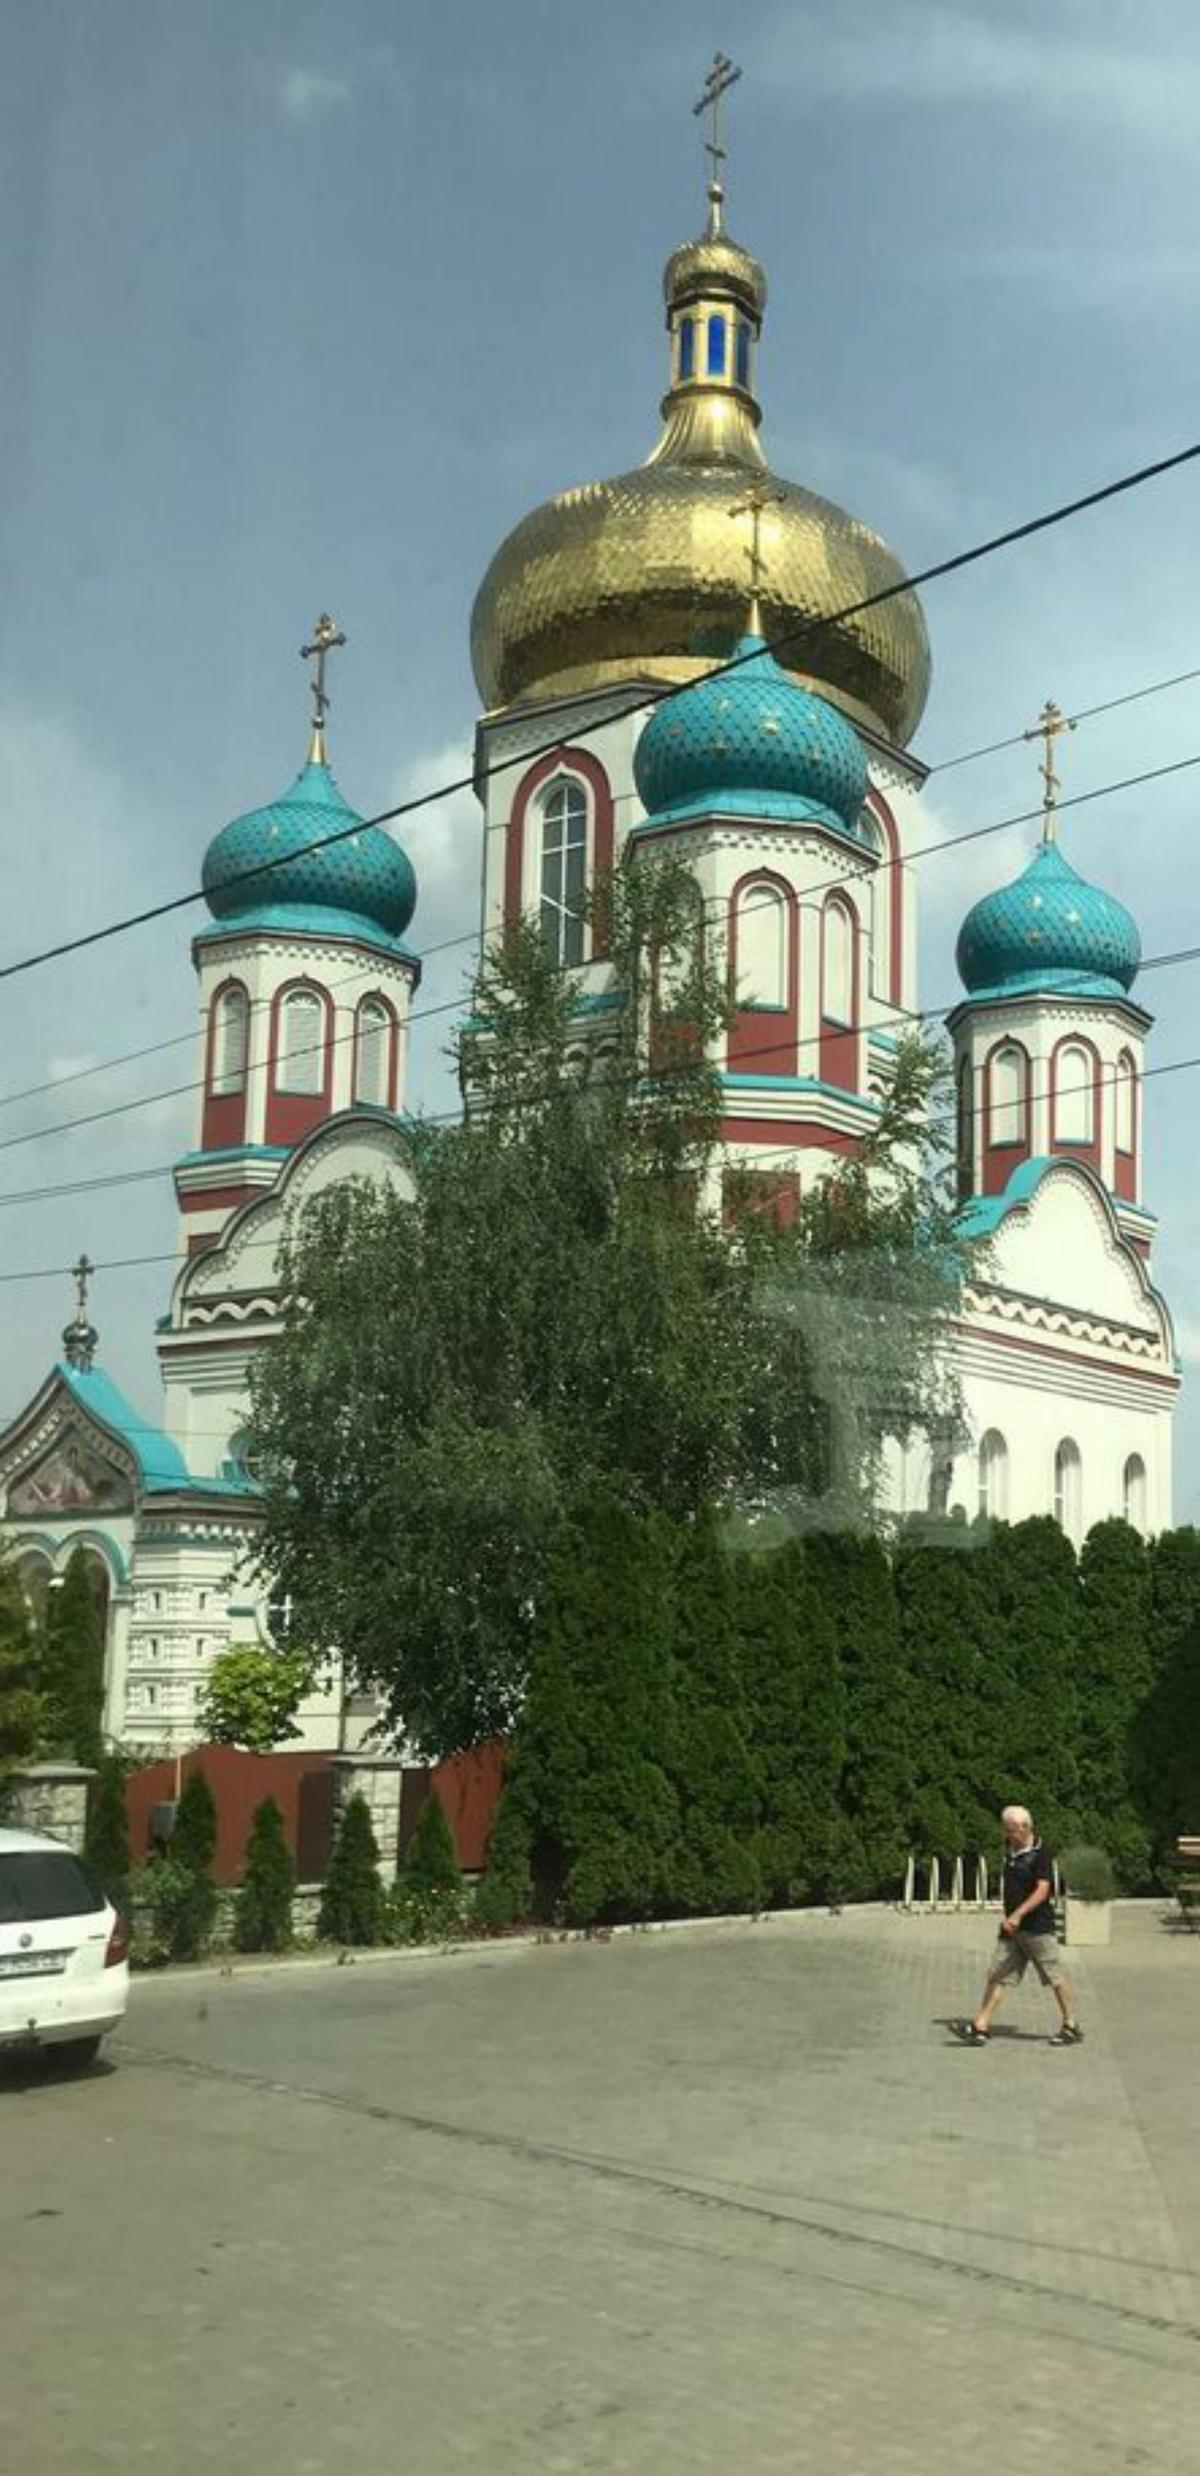 Fachada del templo ortodoxo en Lviv, Ucrania